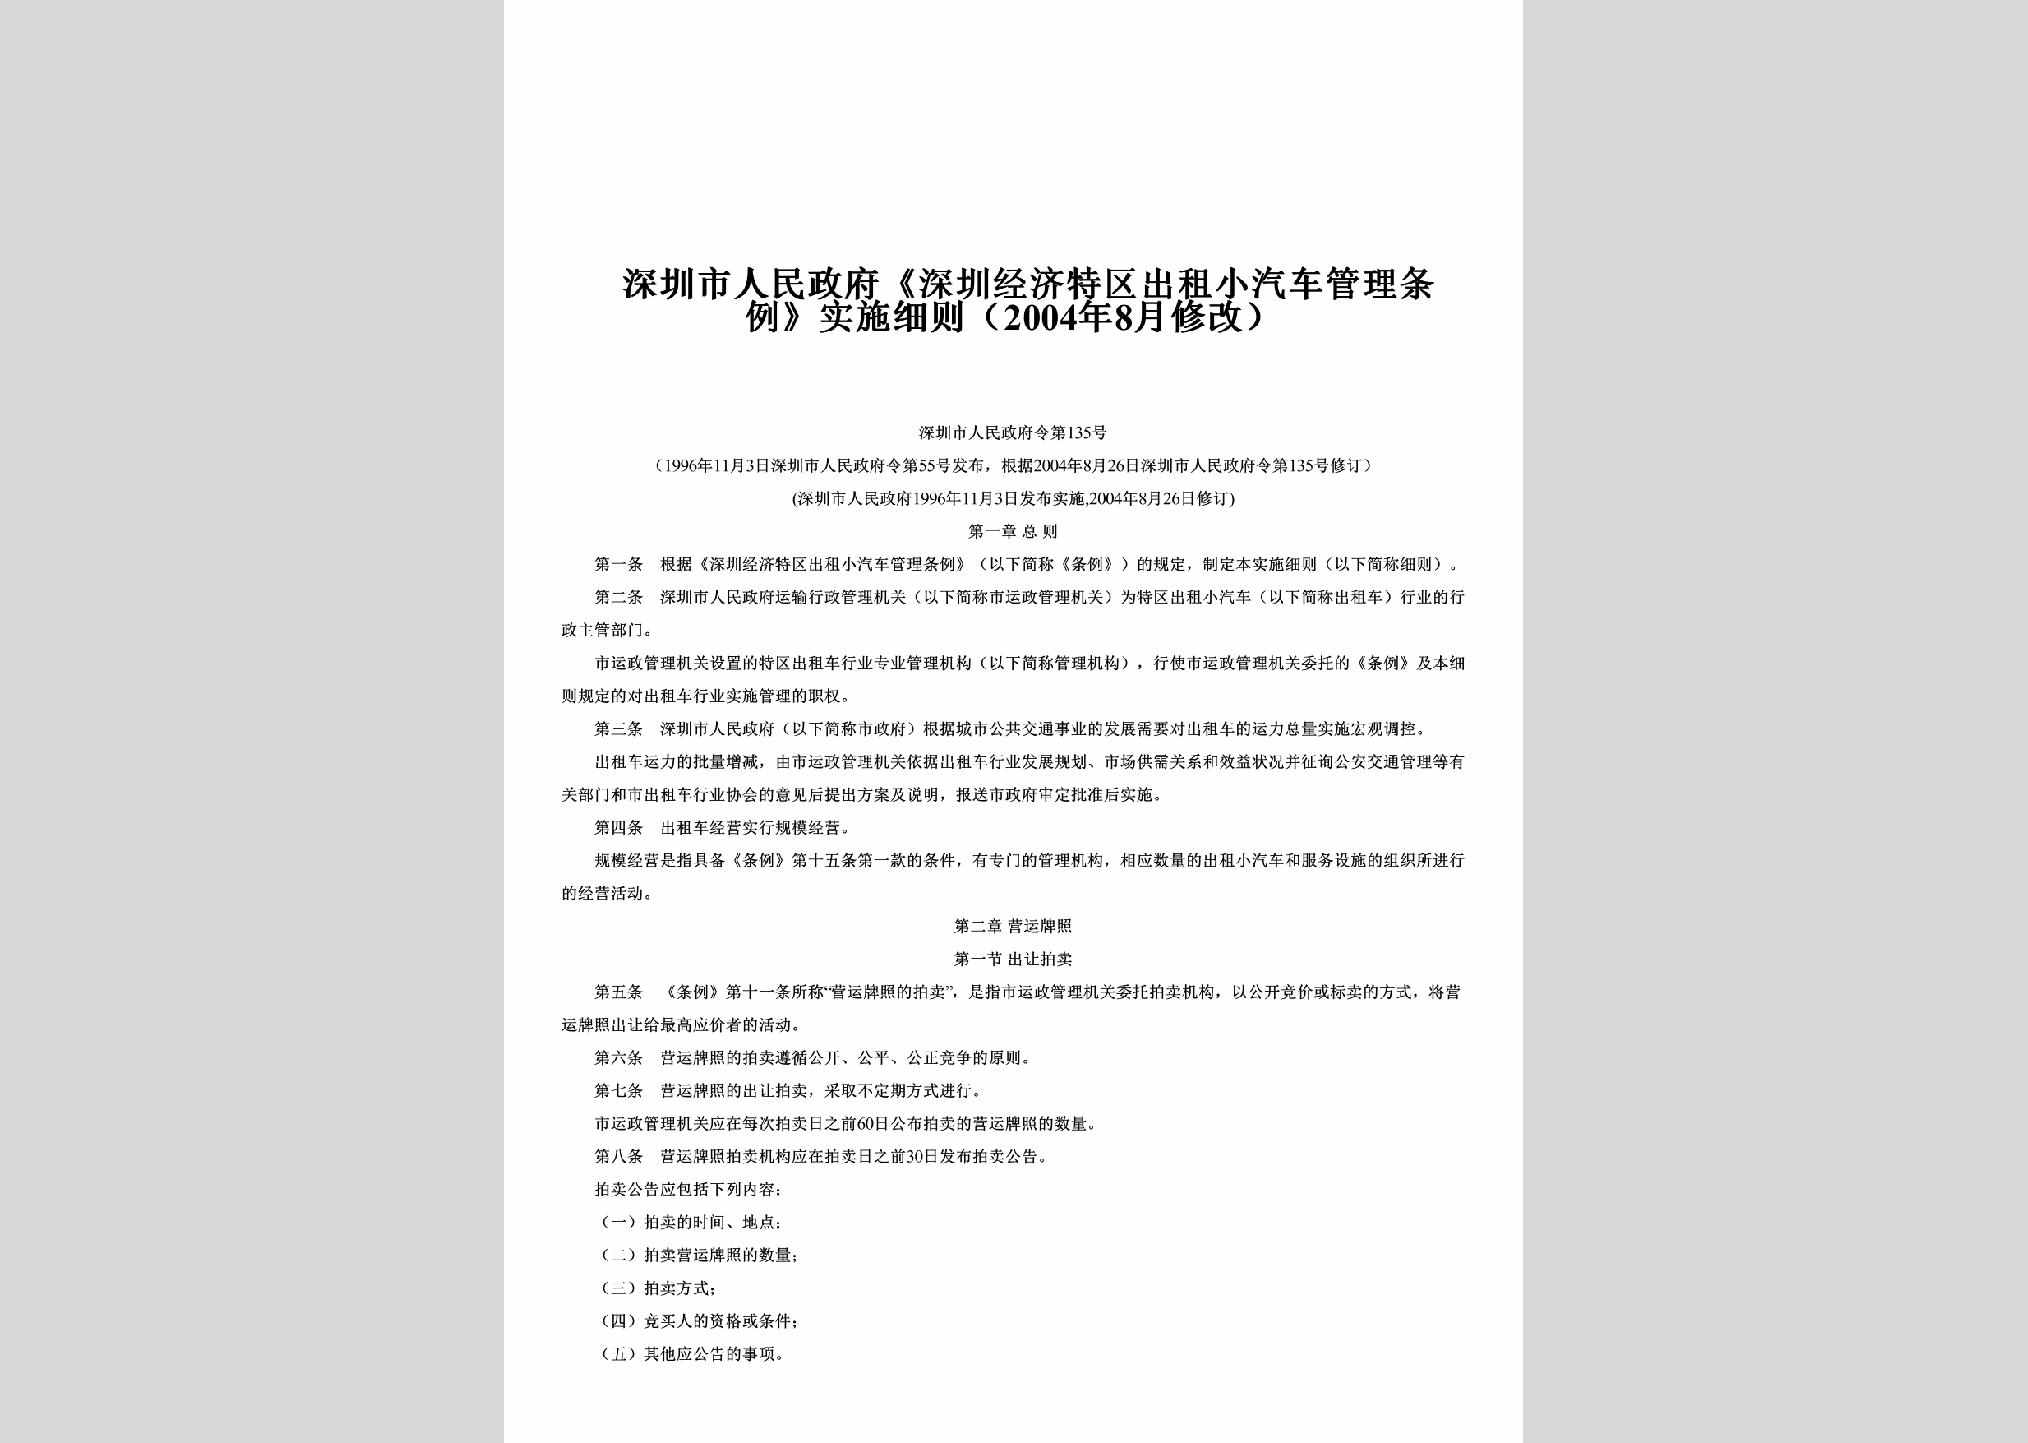 SZRMZFL-2004-135：《深圳经济特区出租小汽车管理条例》实施细则（2004年8月修改）